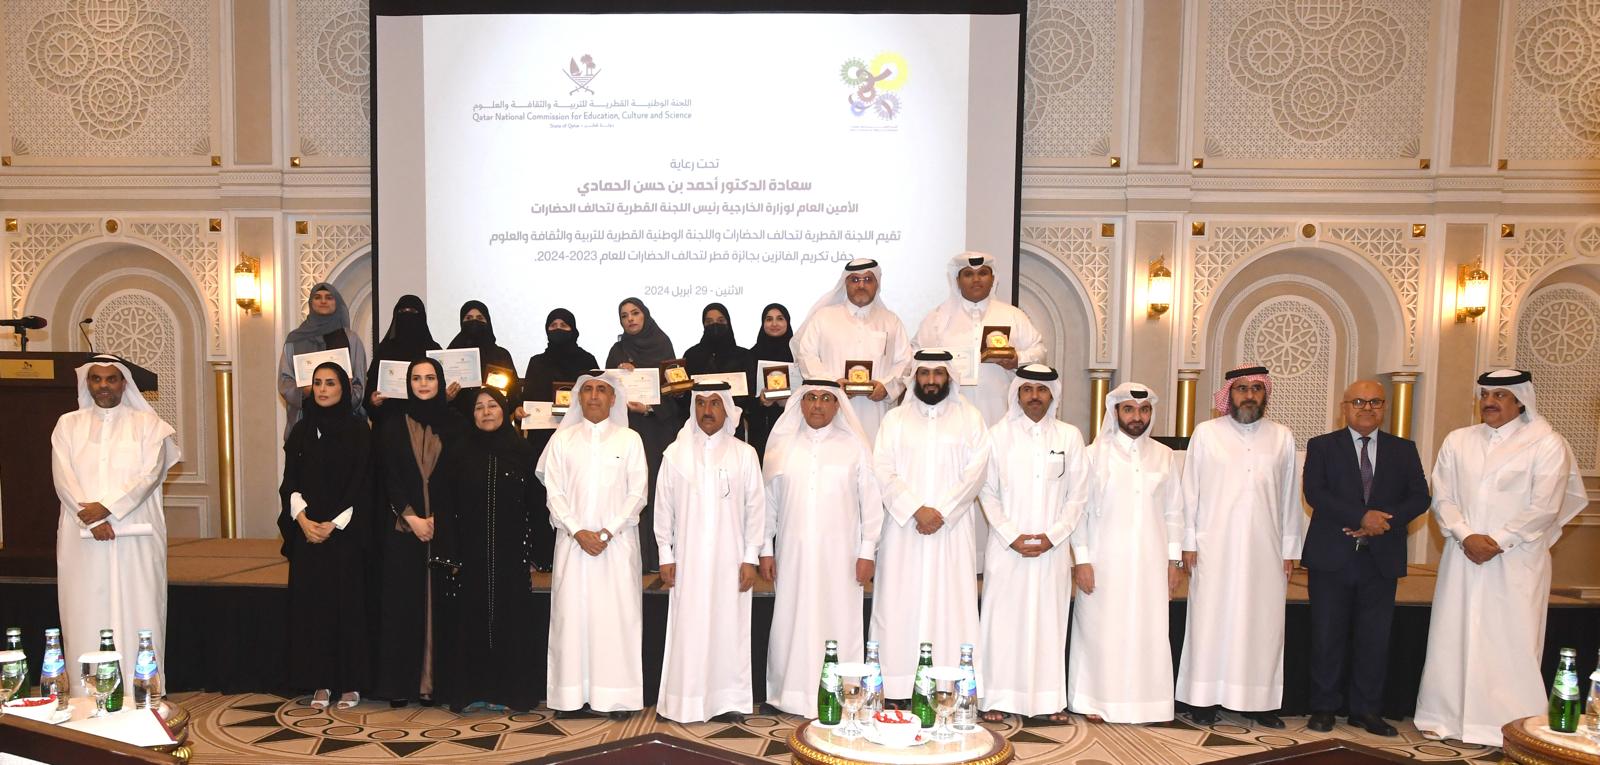 الأمين العام لوزارة الخارجية يرعى حفل تكريم الفائزين بجائزة قطر لتحالف الحضارات